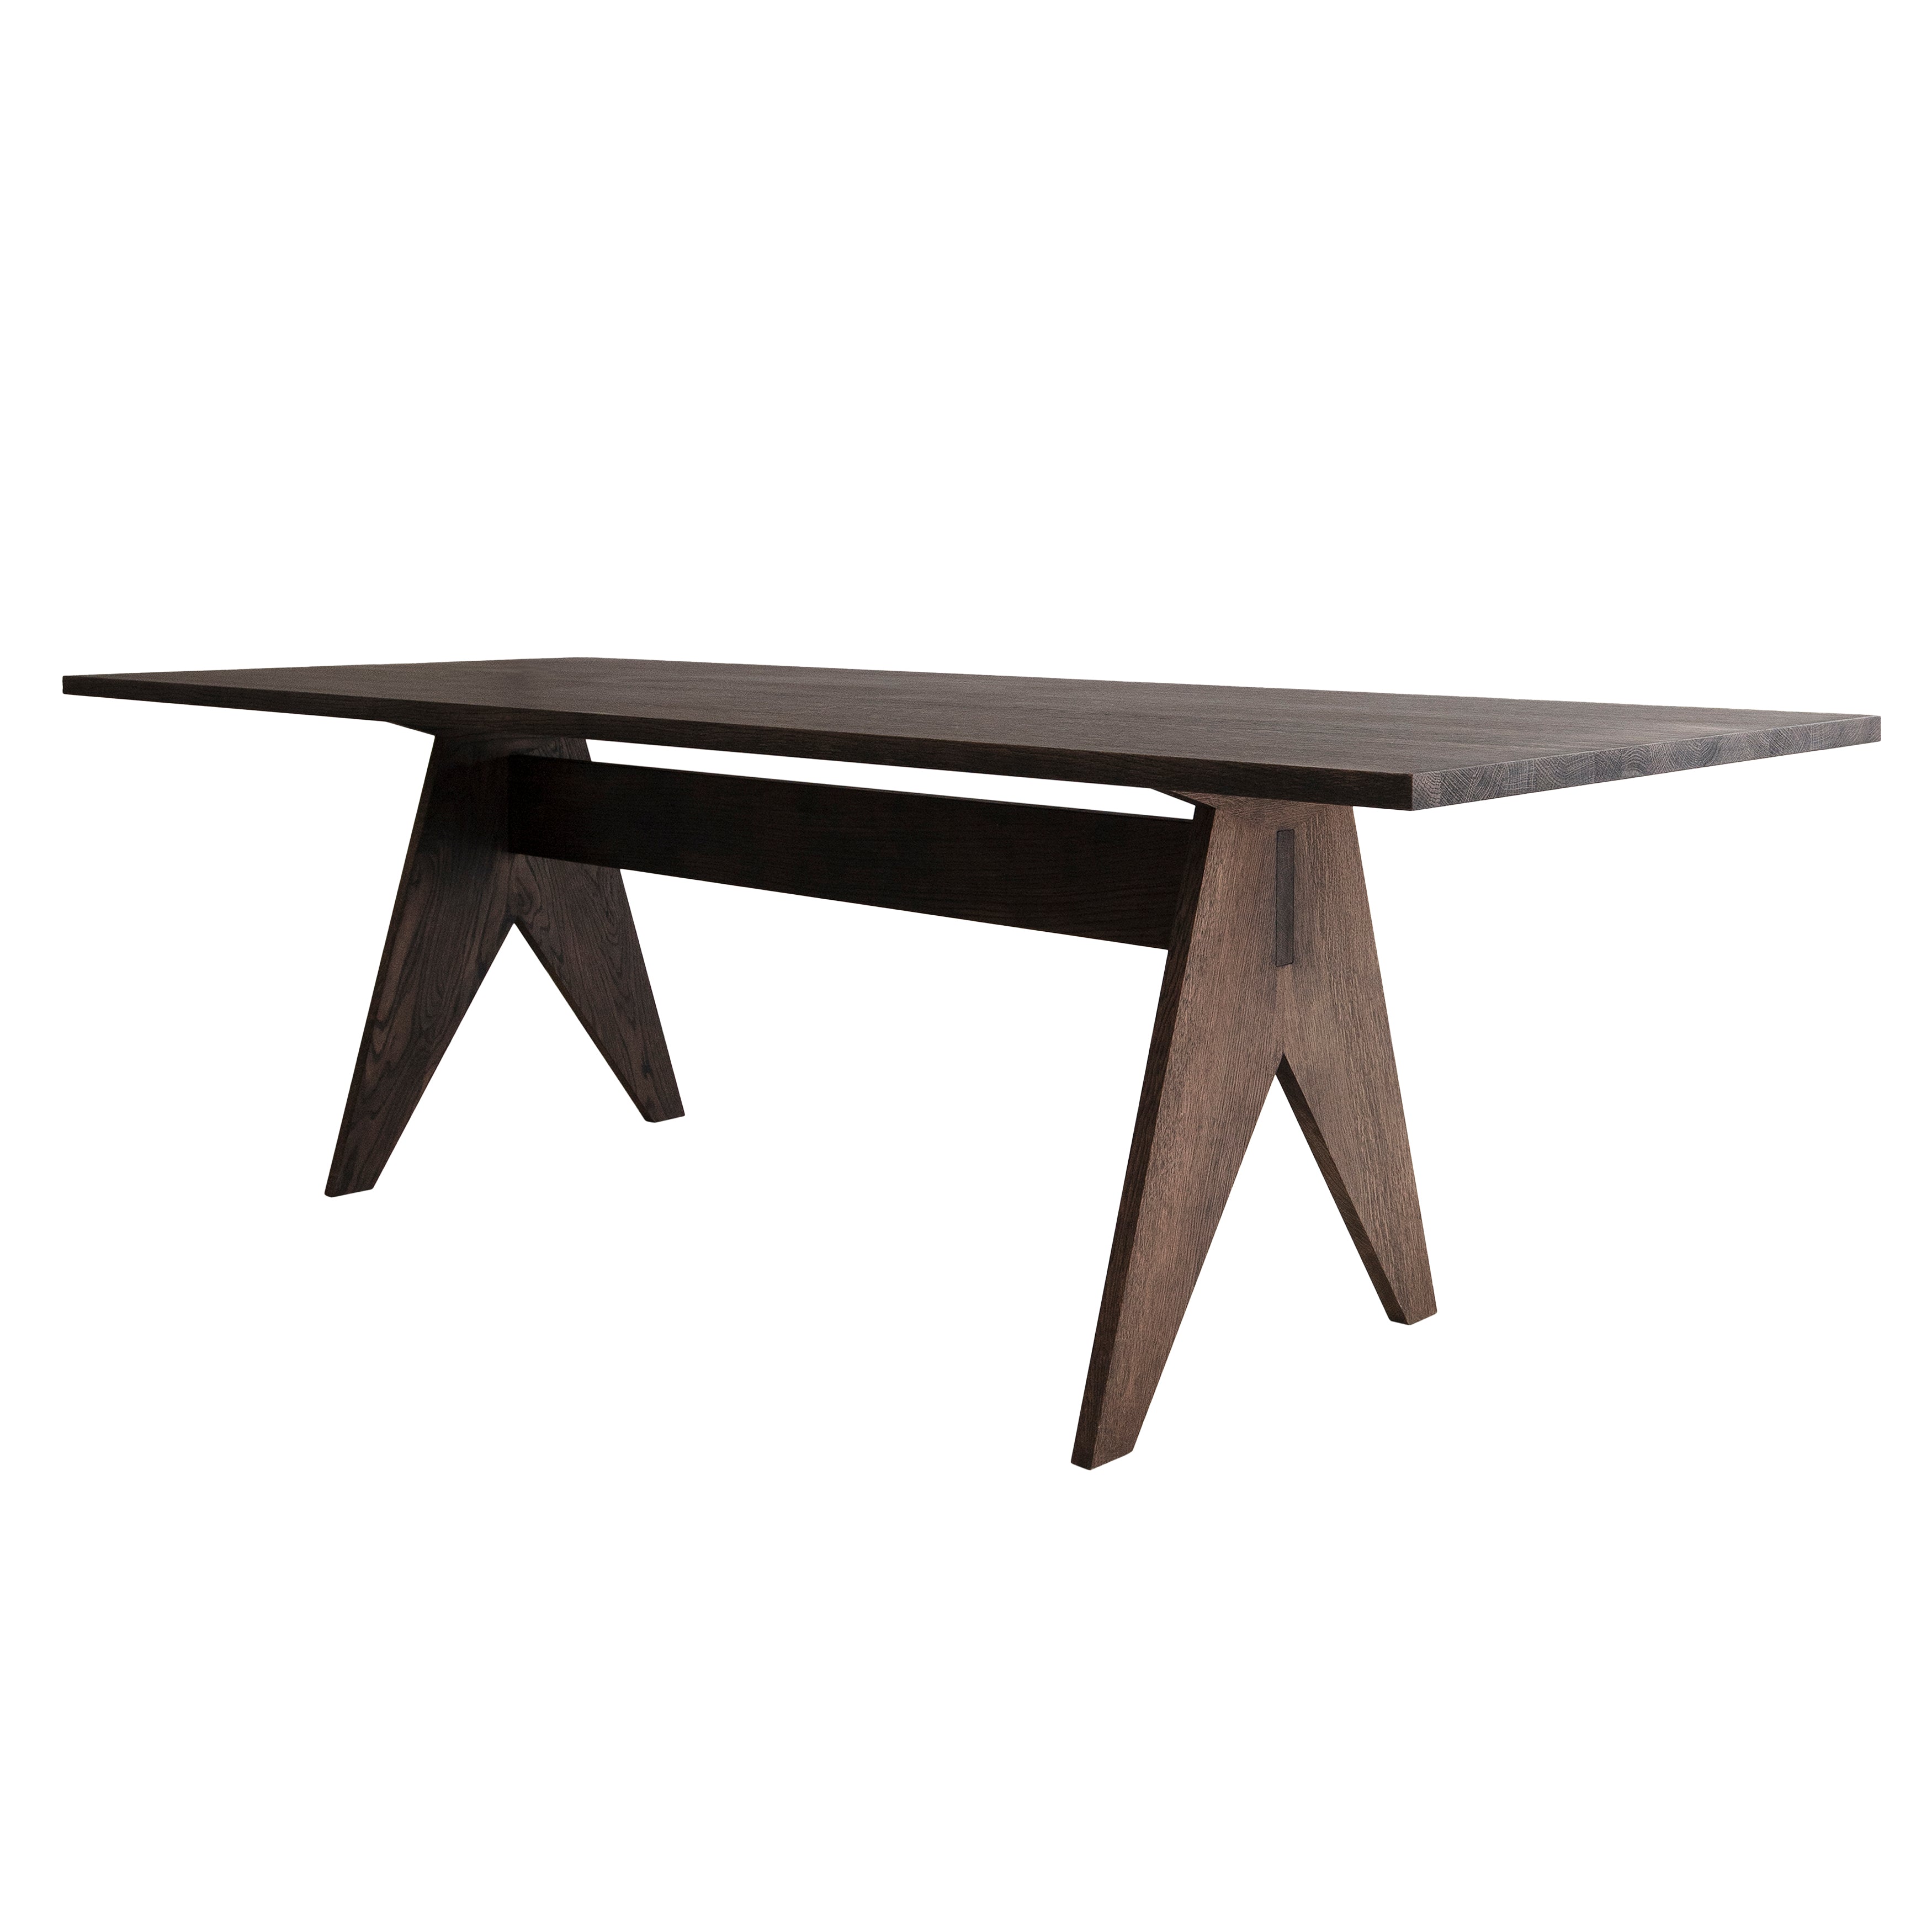 Pose Dining Table: Smoked Oak + Medium - 98.4